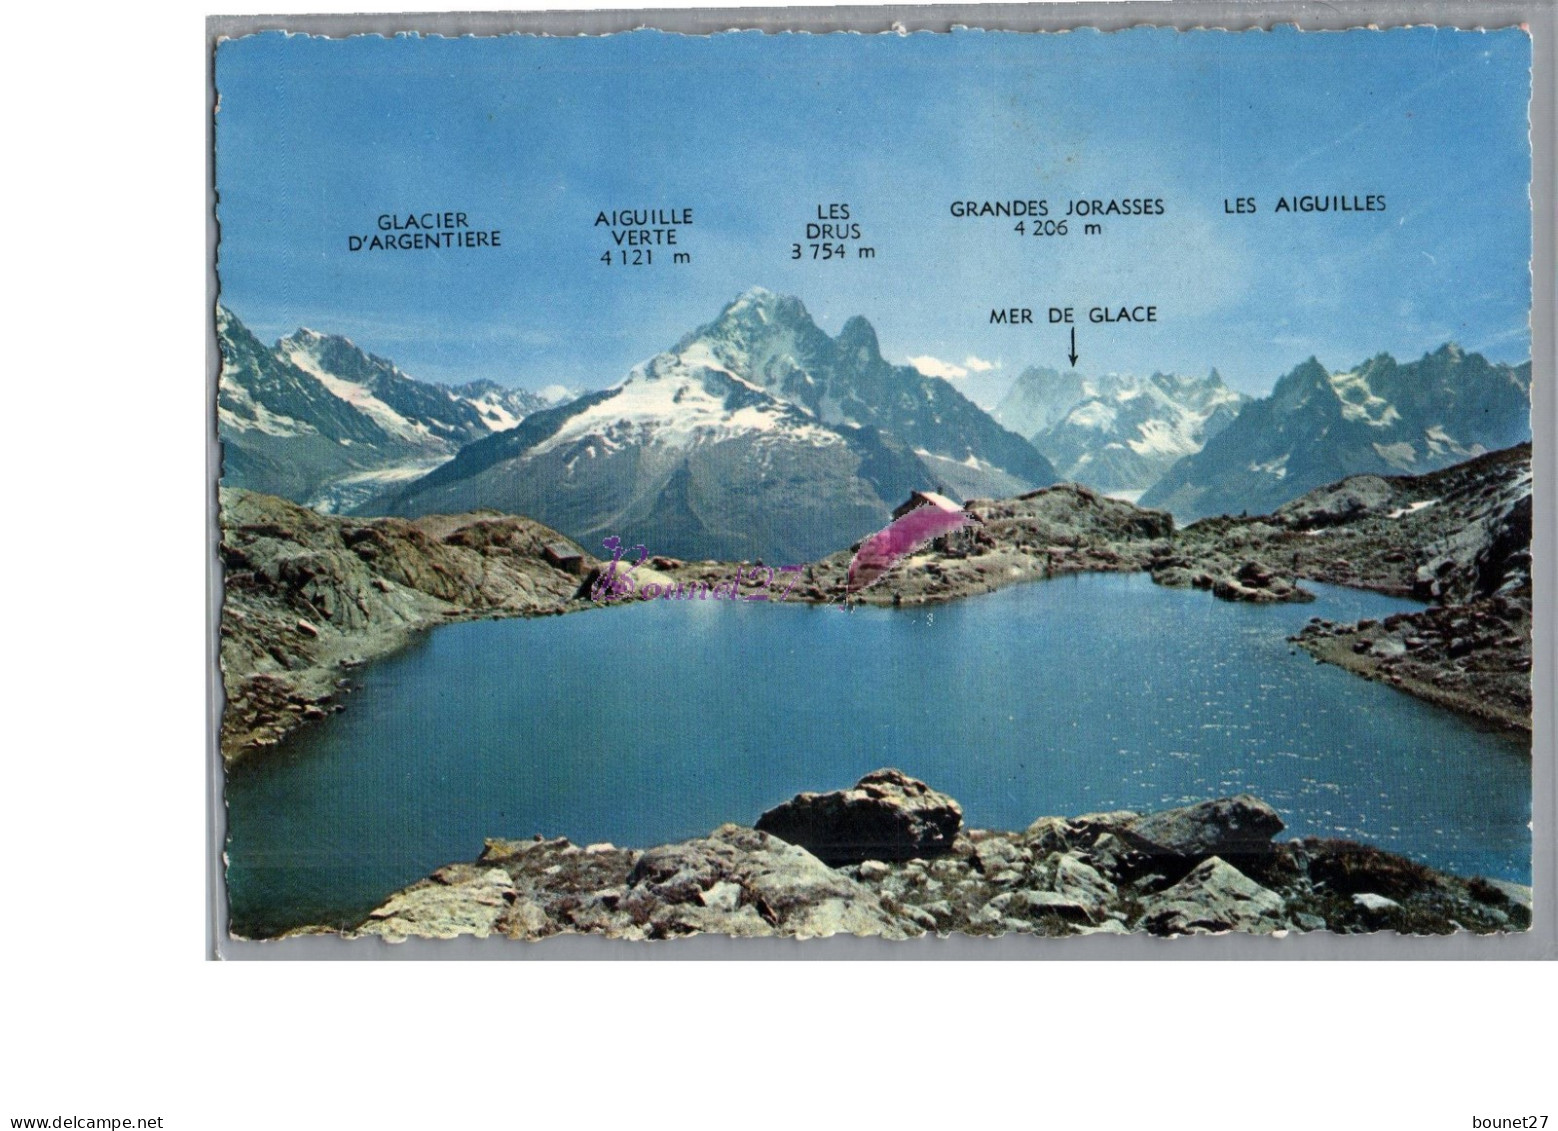 VALLEE DE CHAMONIX MONT BLANC 74 - Le Lac Blanc Vue Generale Glacier Aiguille Verte Jorasses Mer De Glace - Chamonix-Mont-Blanc